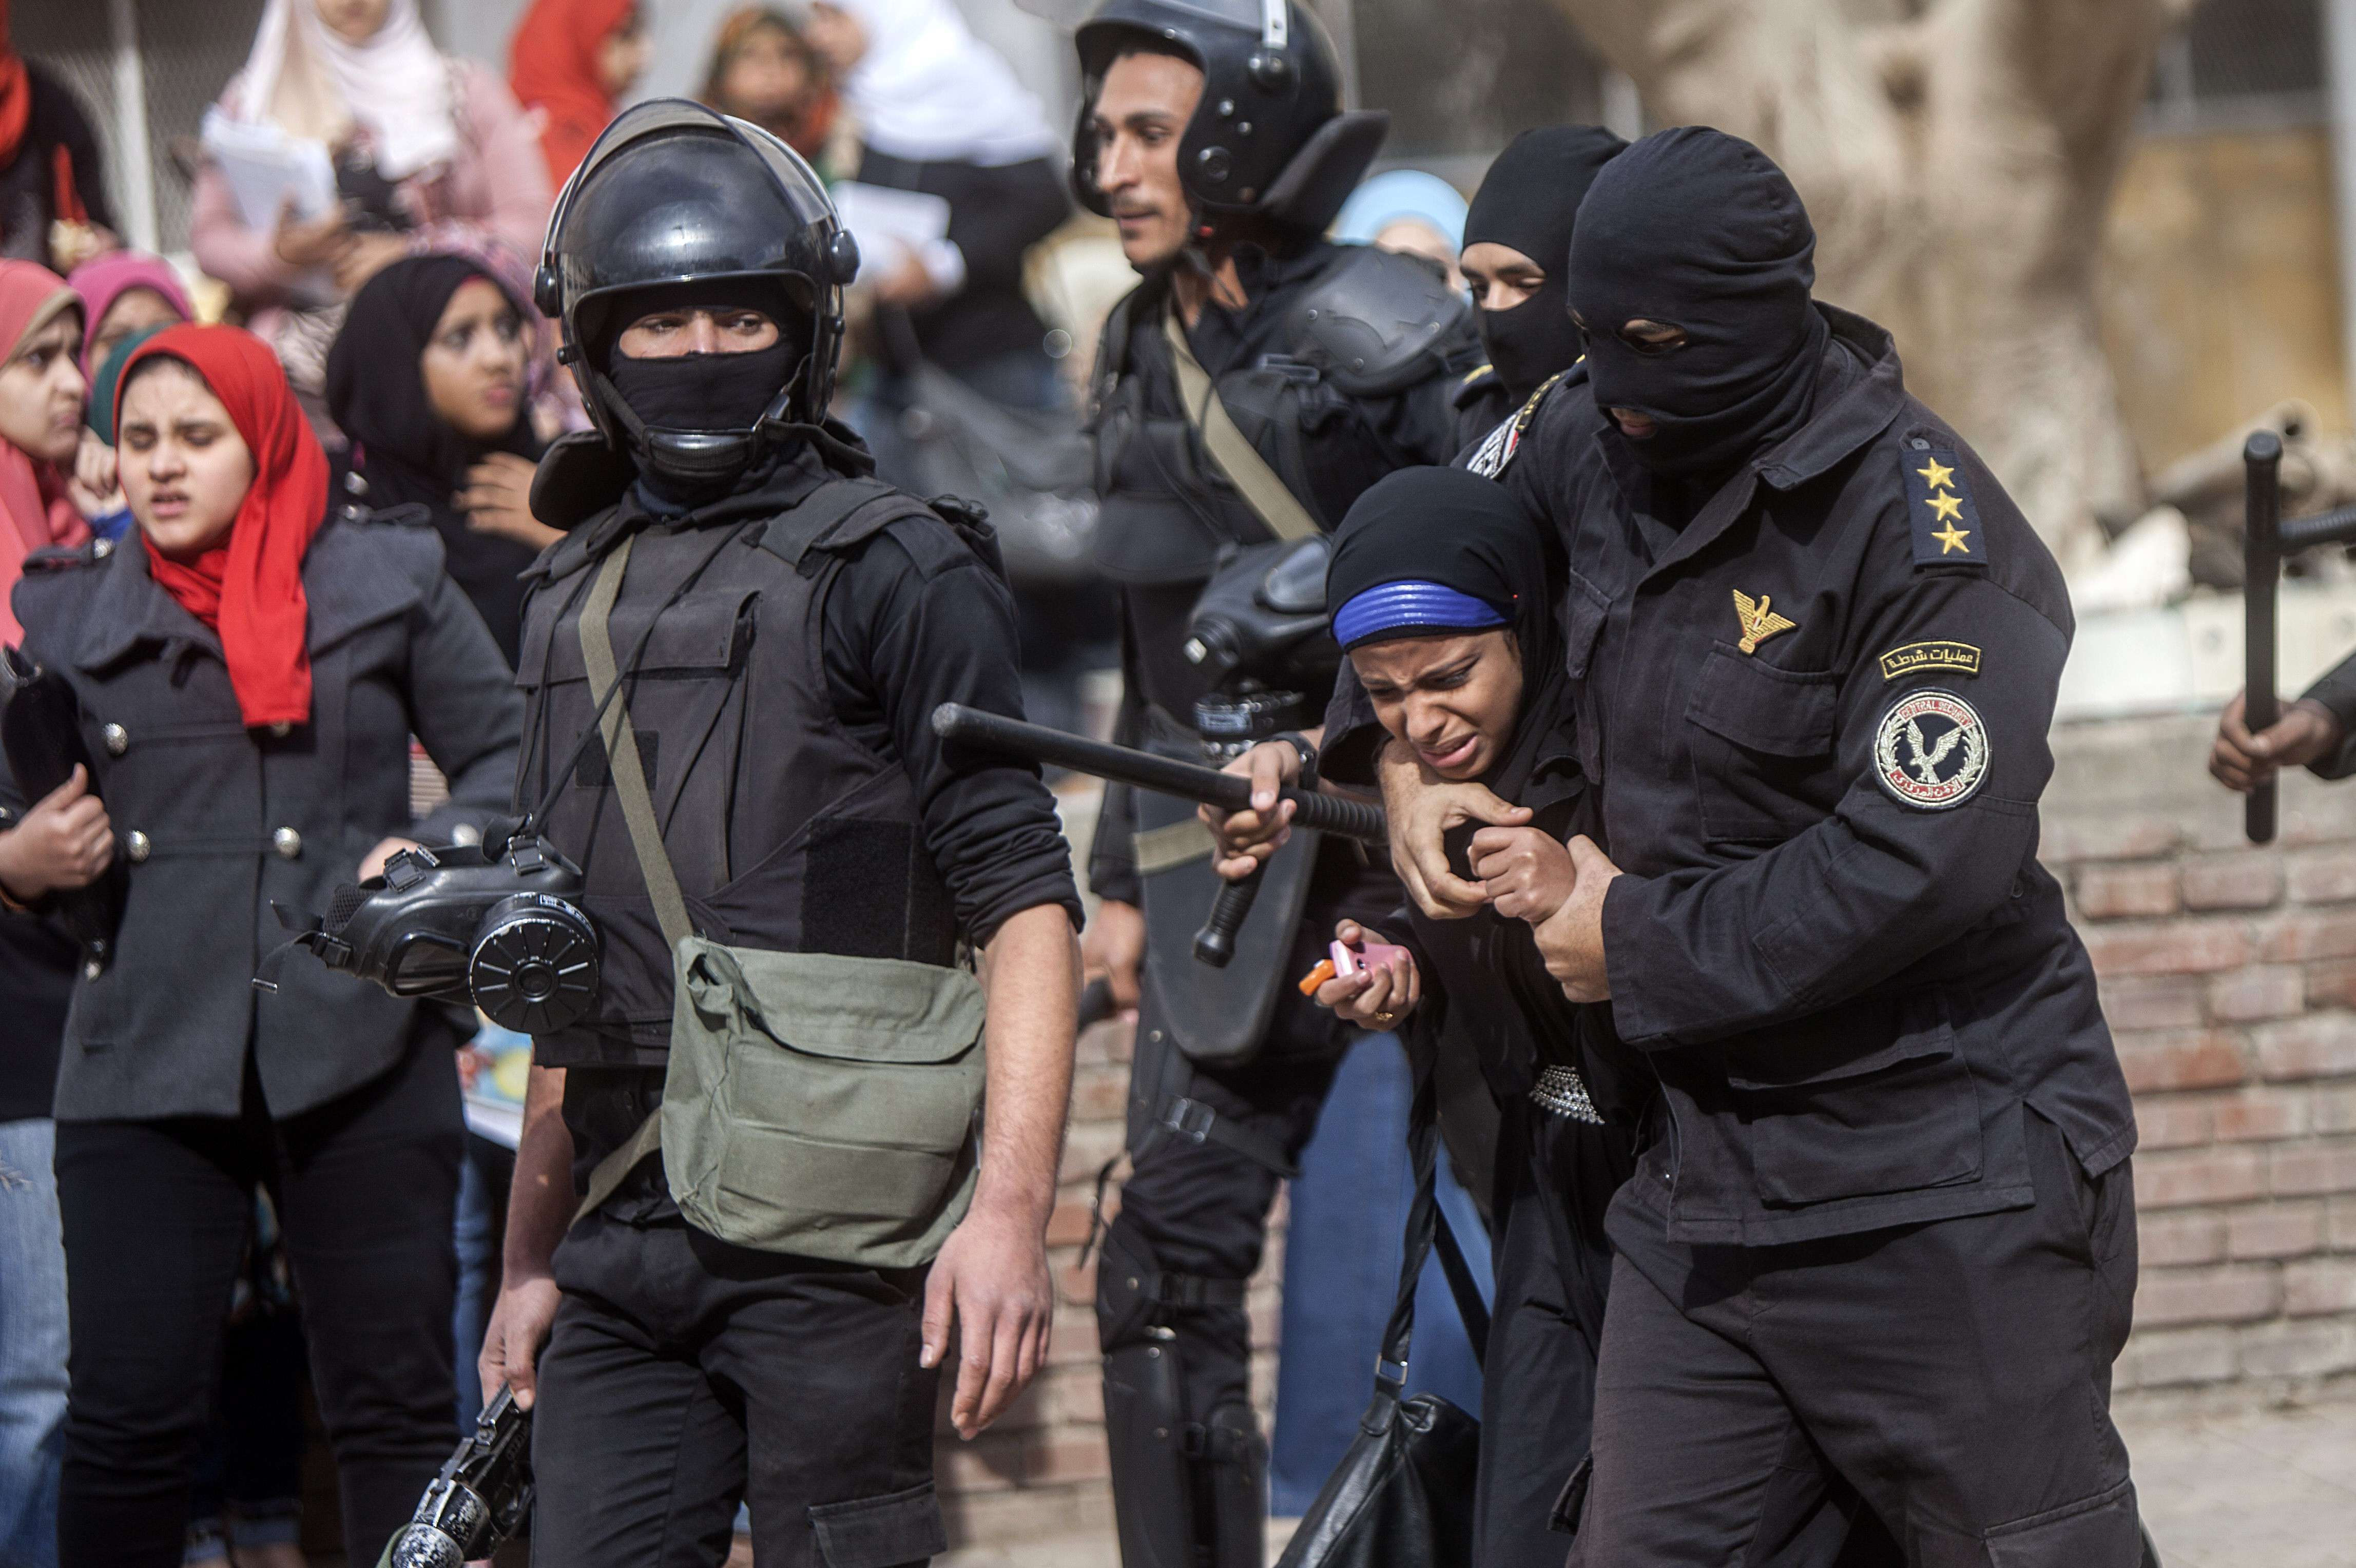 شهدت الجامعات المصرية عنفًا غير مسبوق من قبل قوات الأمن ضد الطلبة، بعد 3 تموز/يوليو 2013 (أ.ف.ب)